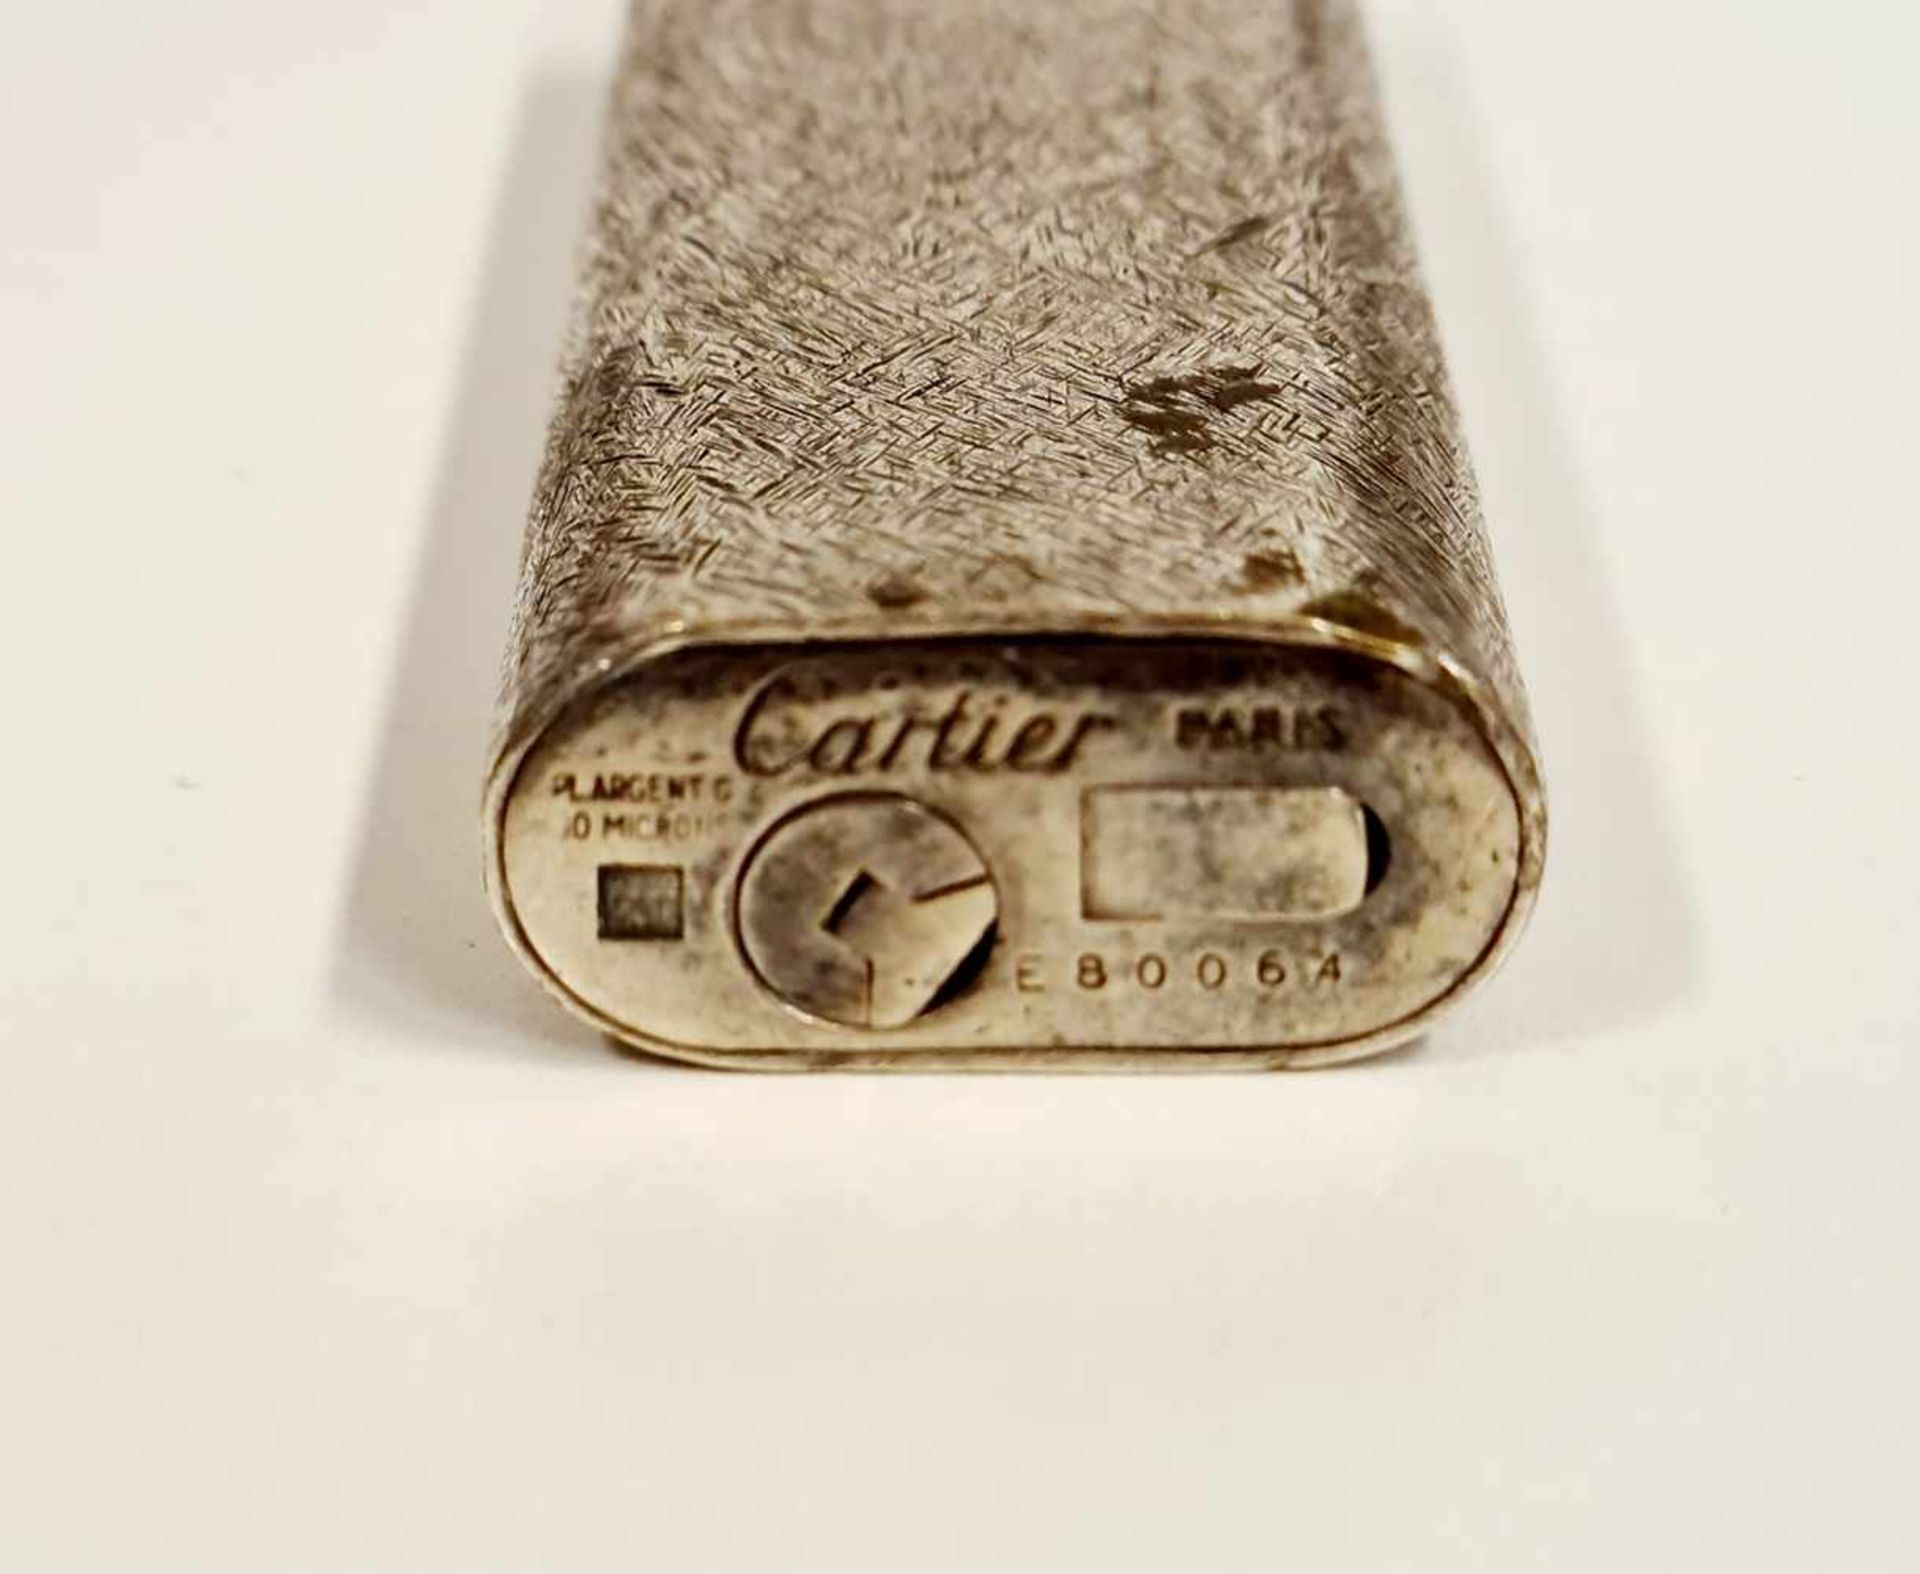 Cartier Paris, Feuerzeug,versilbert, Seriennummer: E80064 , Funktionstüchtig, keine Gewähr auf - Image 2 of 2